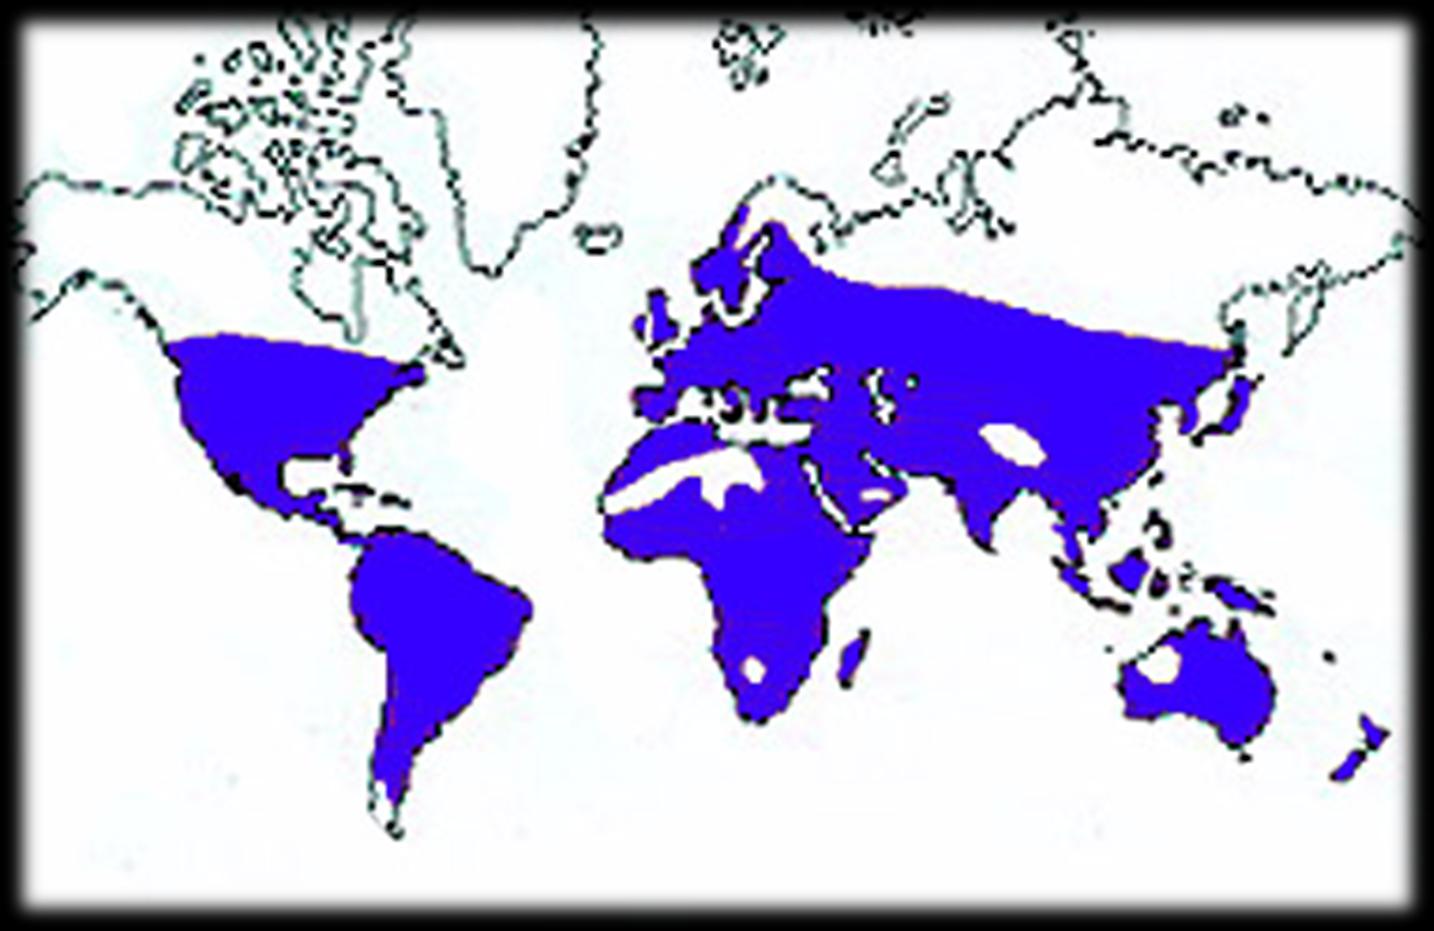 EUPHORBIACEAE DISTRIBUCIÓN GEOGRÁFICA MUNDIAL Principalmente cosmopolita, excepto en la Antártica, con gran